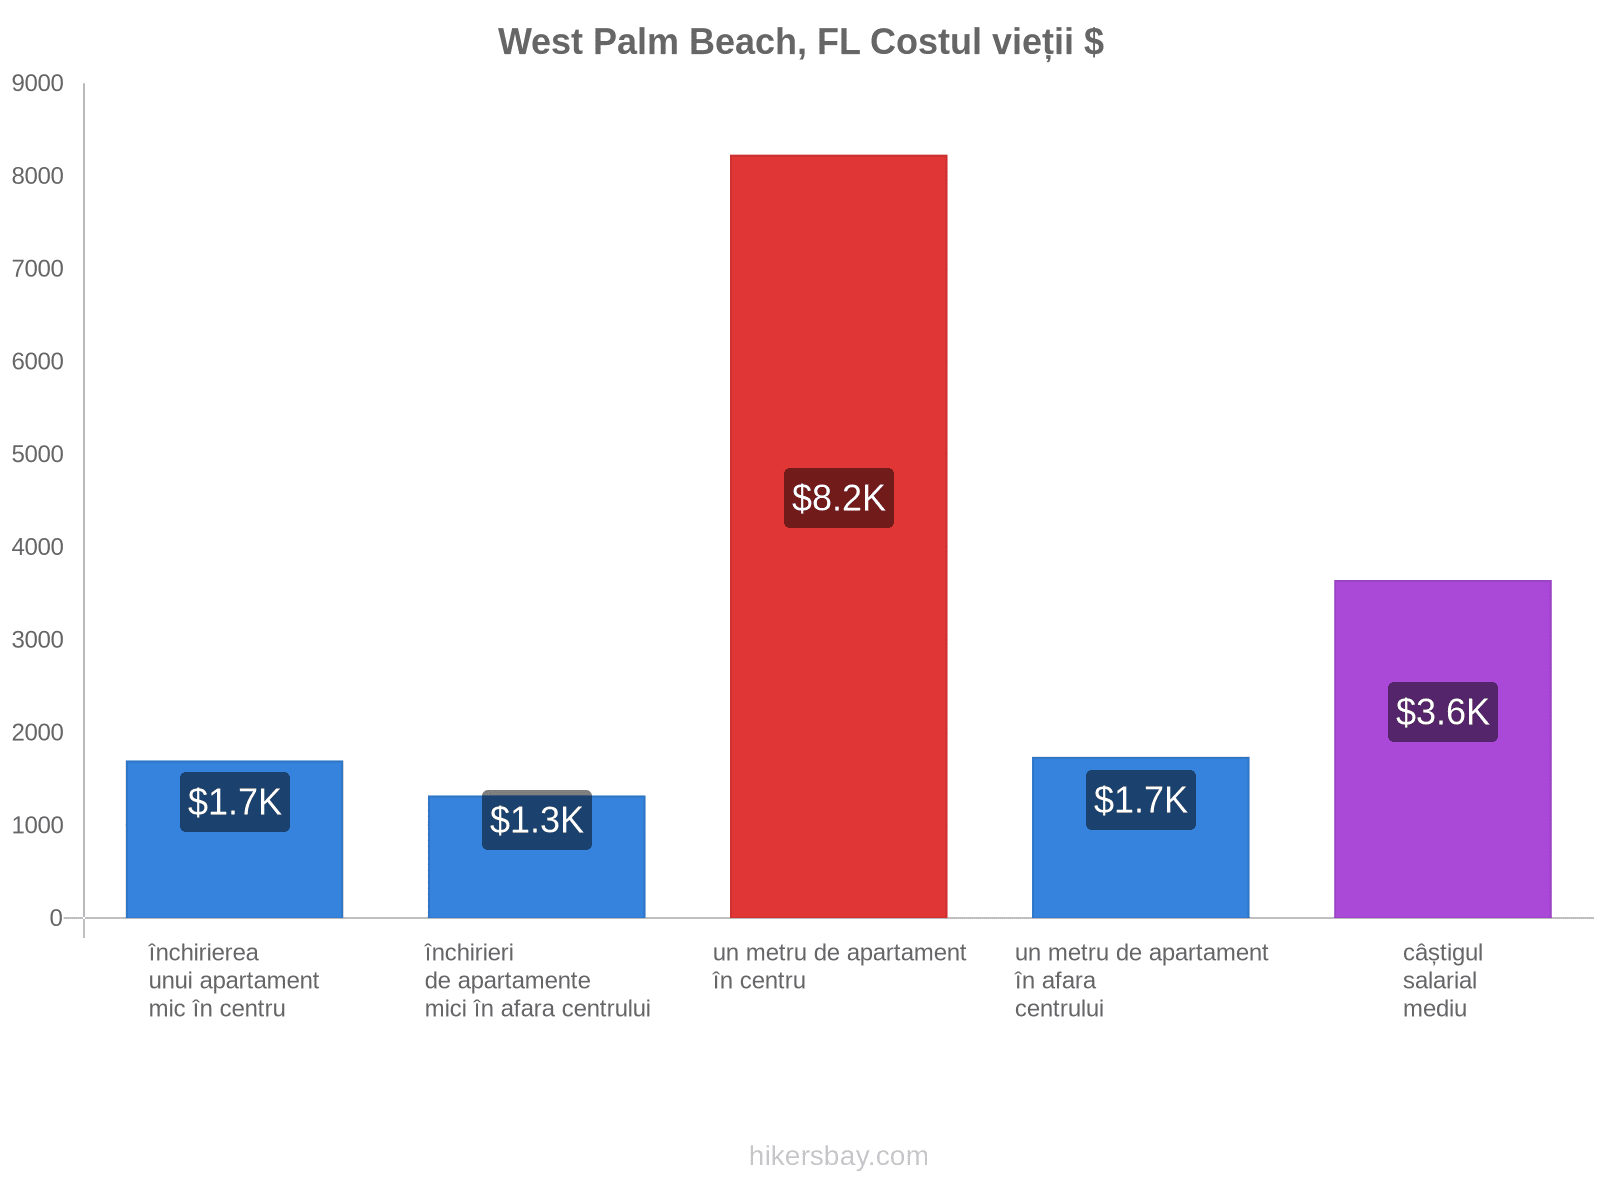 West Palm Beach, FL costul vieții hikersbay.com